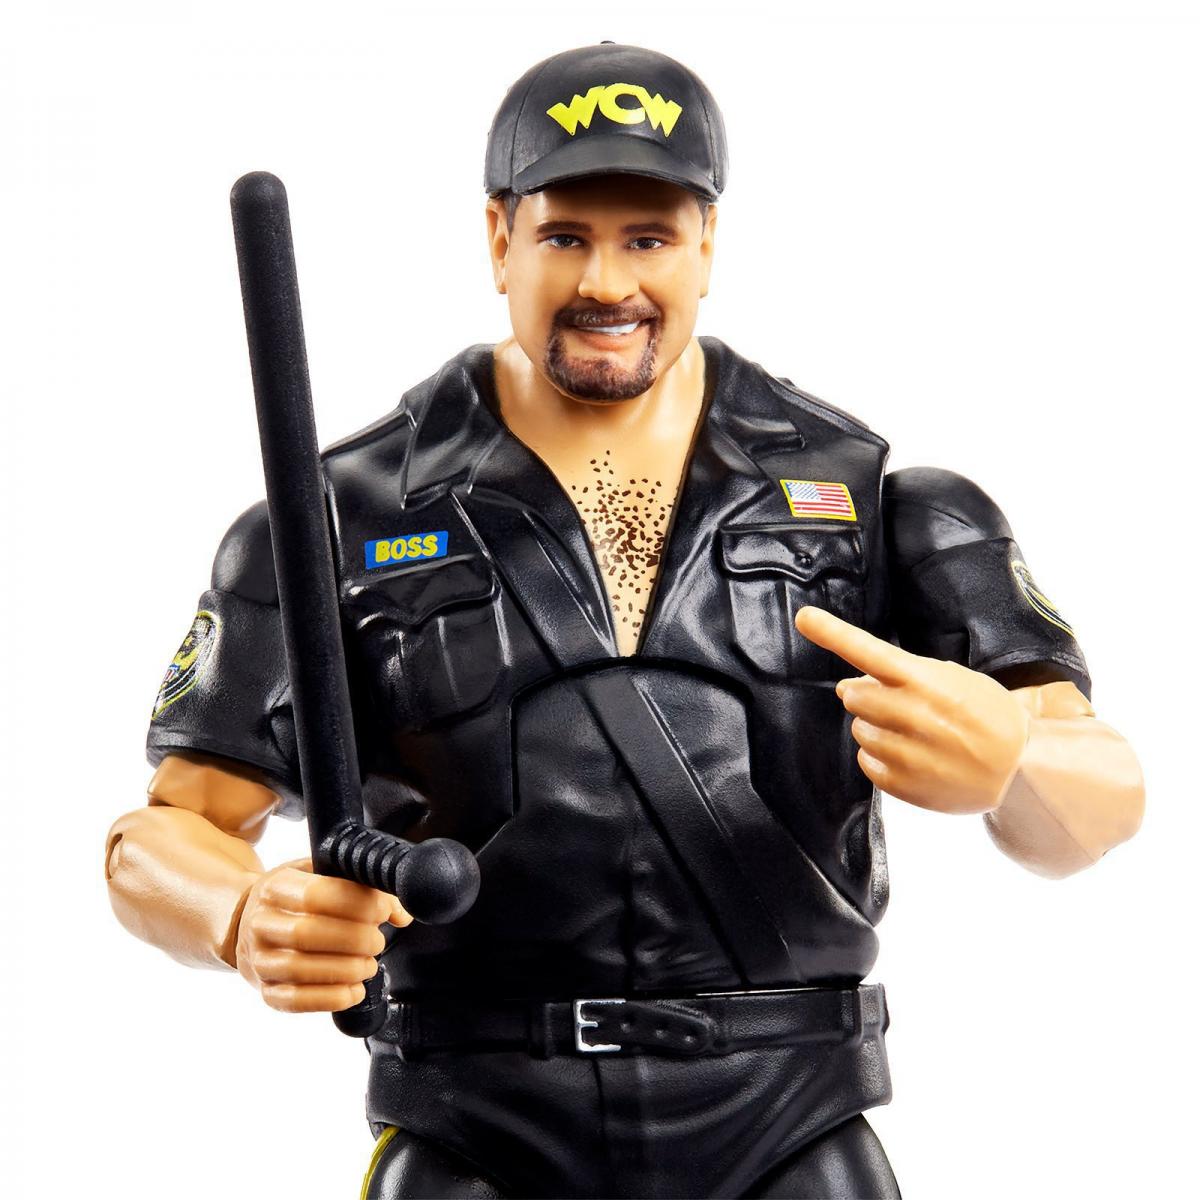 2021 WWE Mattel Elite Collection Series 90 Big Boss Man [Chase]